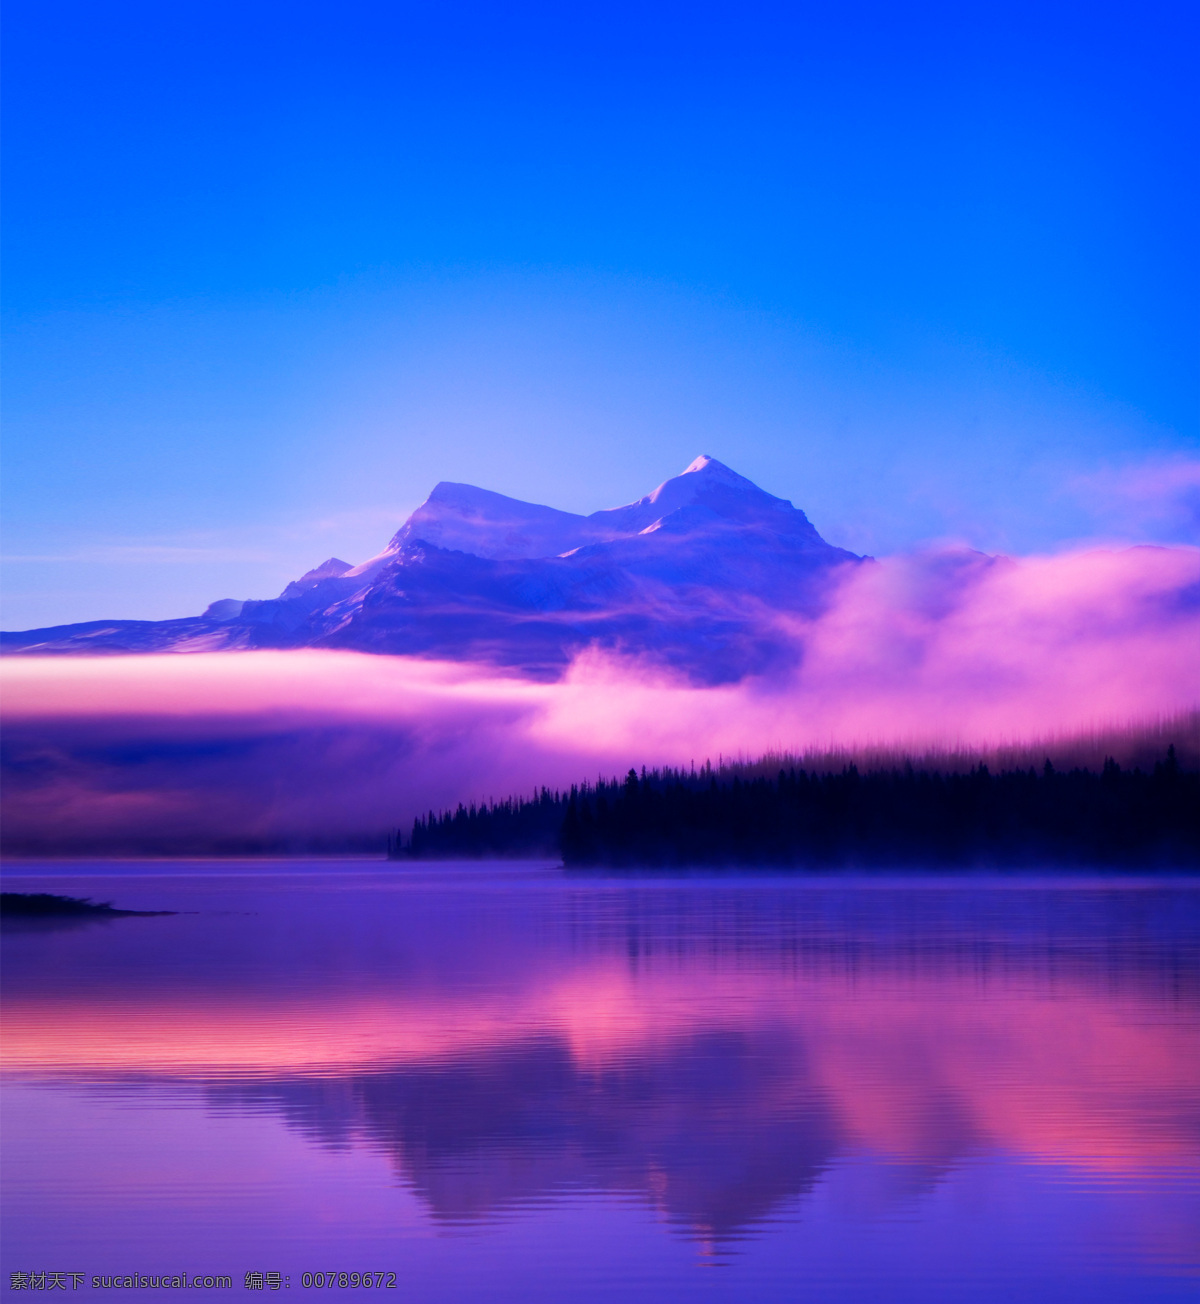 雪山湖面 雪山 湖面 倒影 天空 白云 摄影专辑 自然景观 自然风景